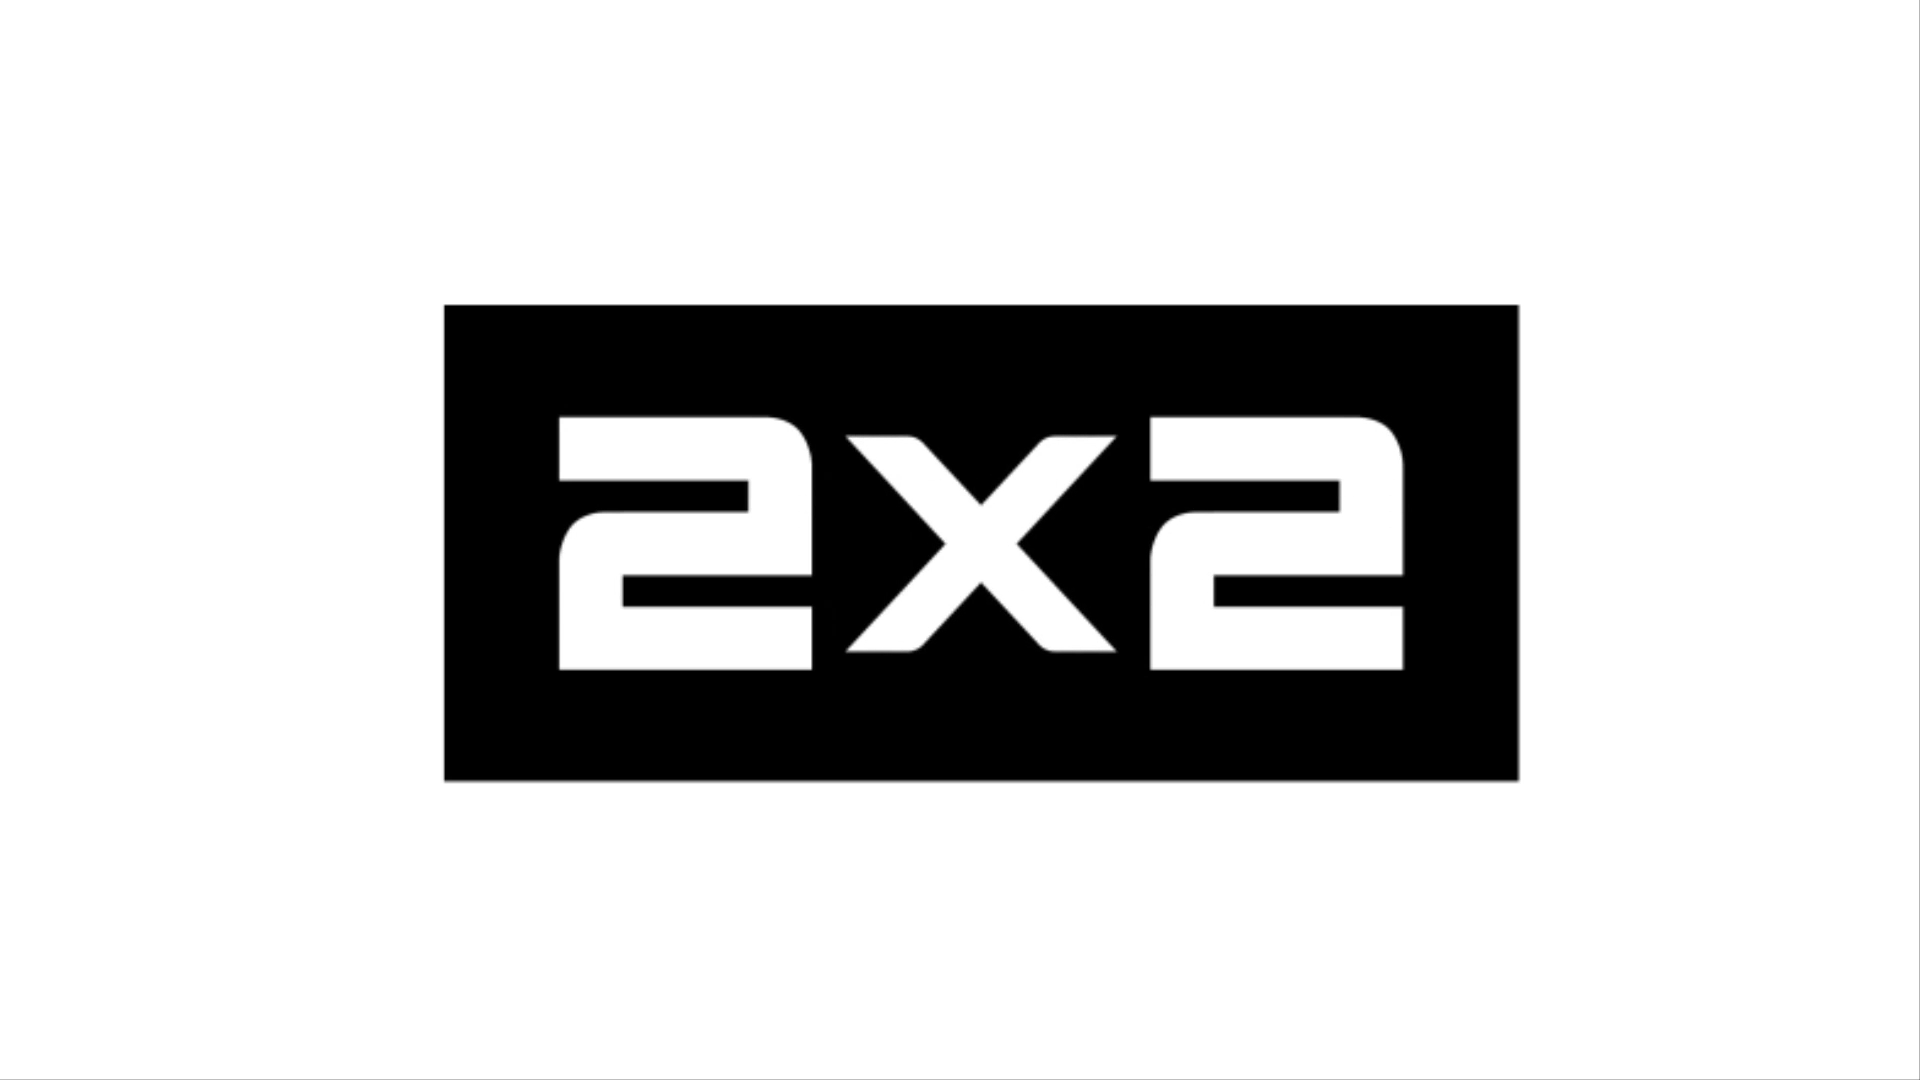 Телеканал 2х2 логотип. Телеканал 2х2 (the 2x2 channel). Эмблема канала 2х2. Дважды два логотип.